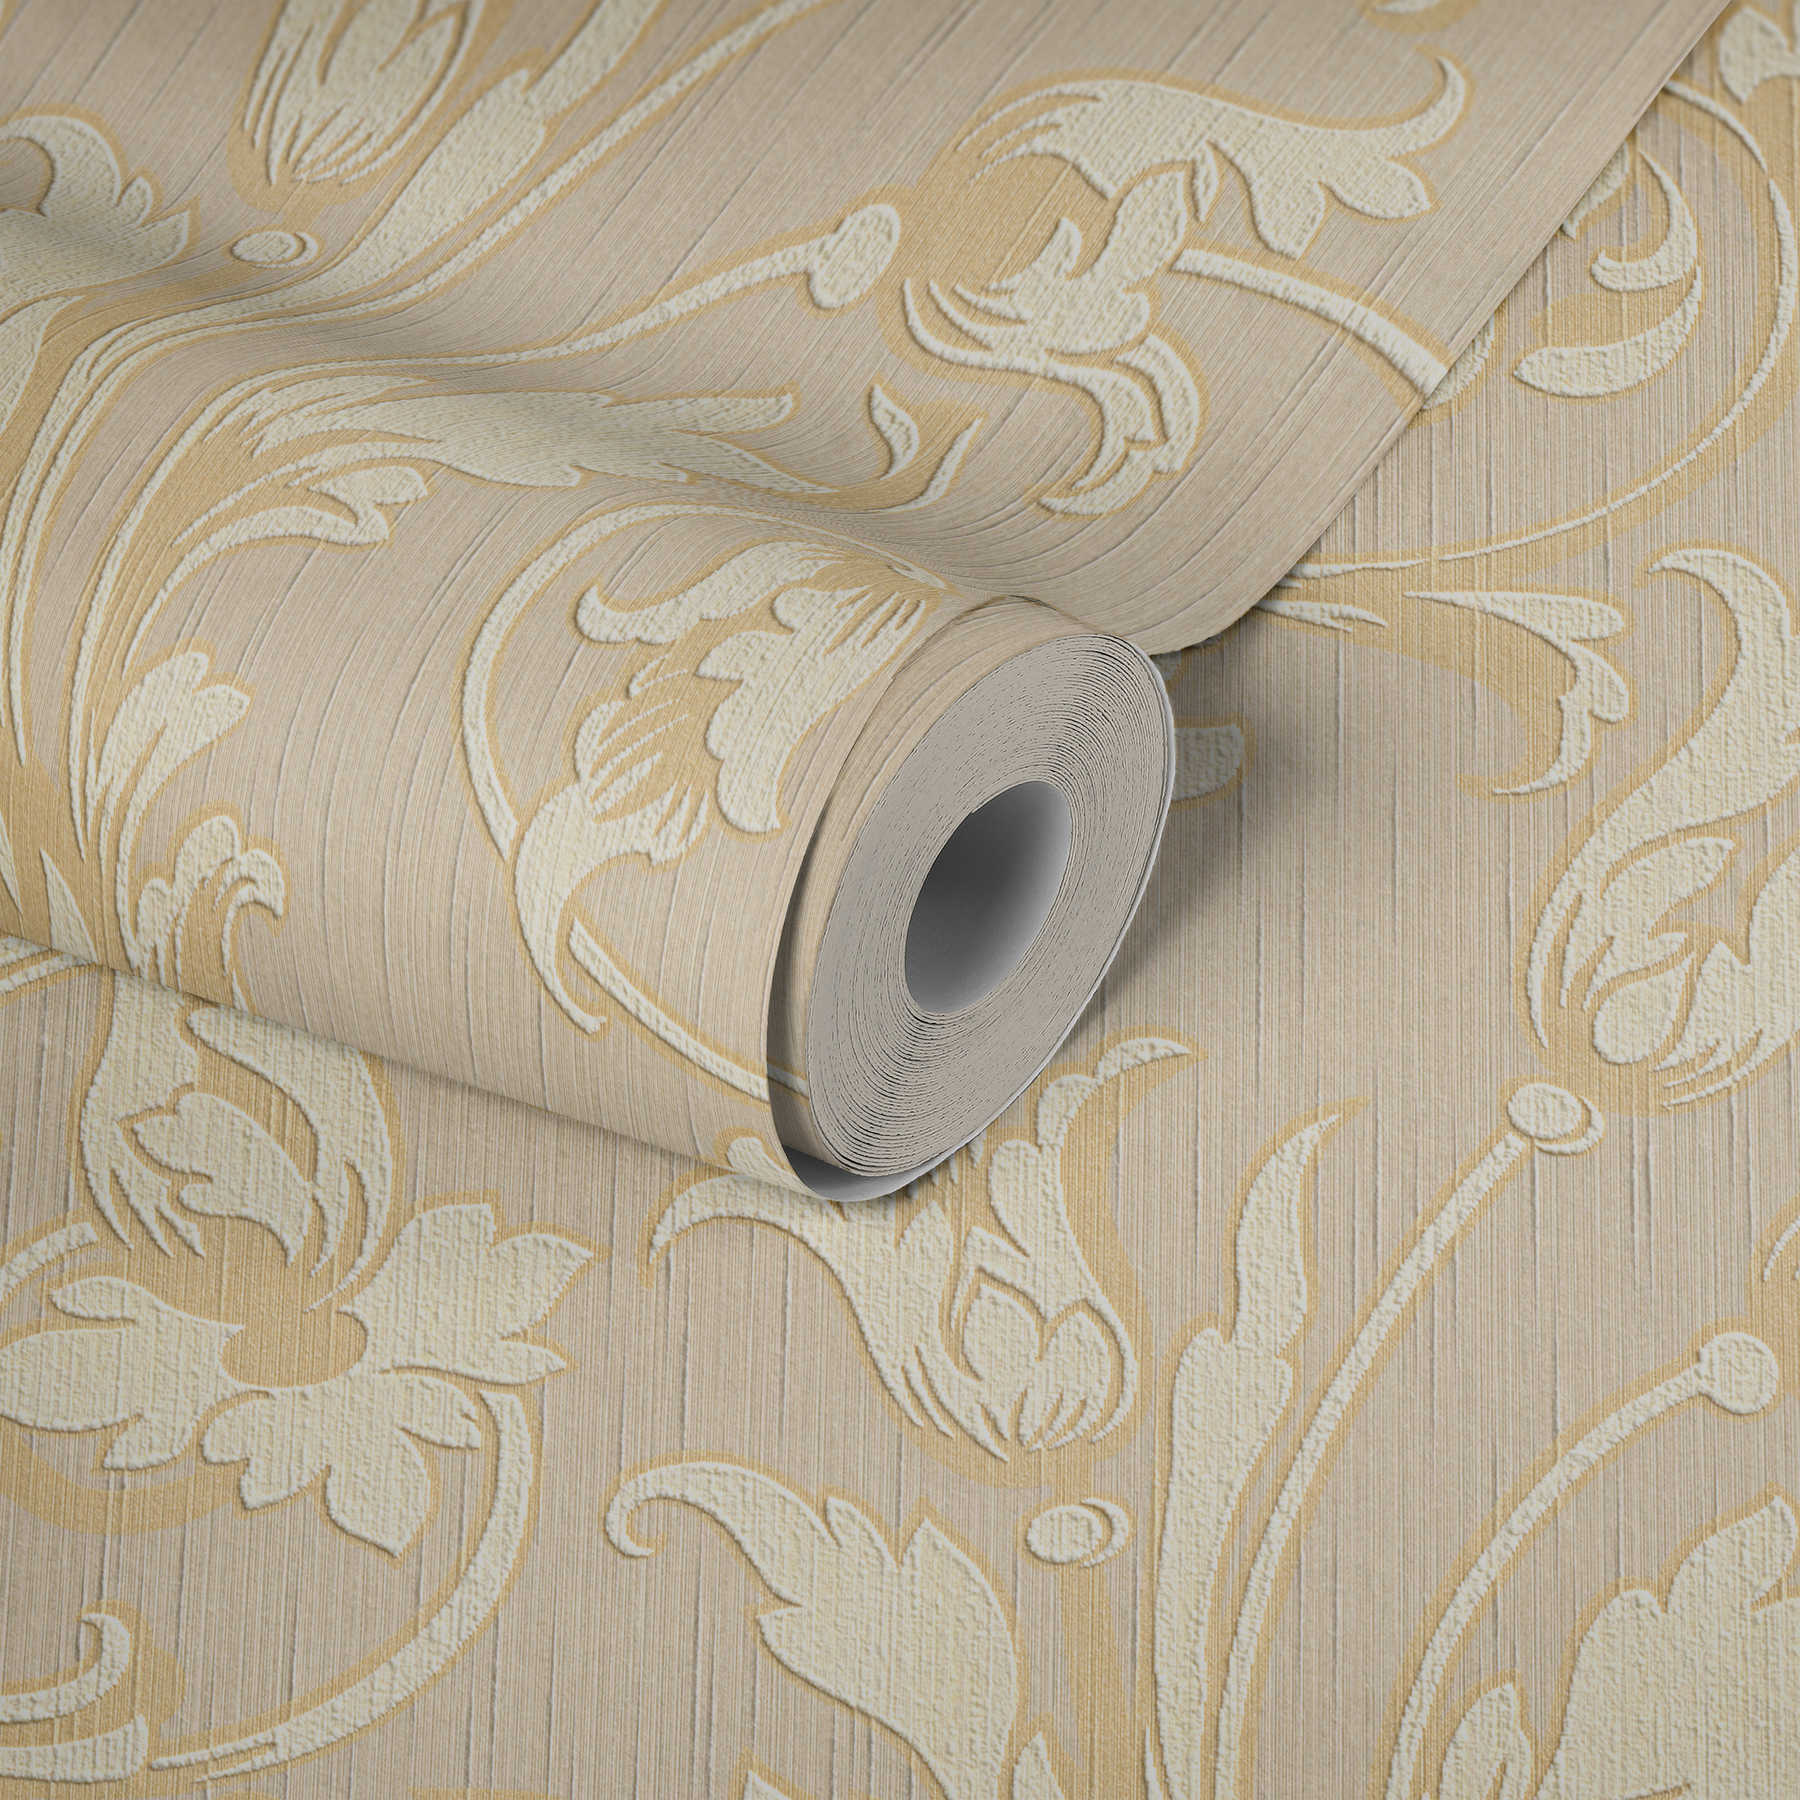             papier peint en papier ornemental aspect soie - crème, or, beige
        